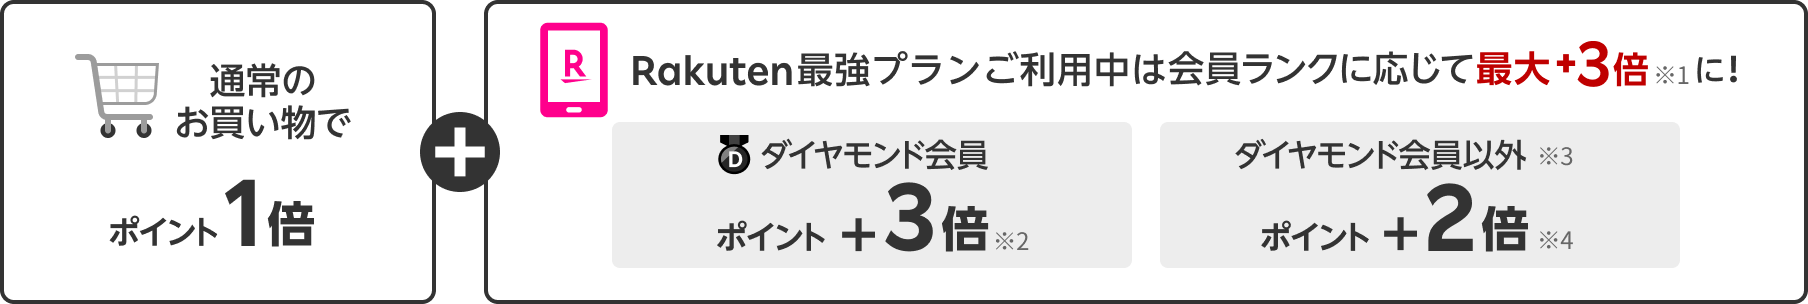 通常のお買い物で ポイント1倍。楽天市場アプリ ポイント＋0.5倍。Rakuten最強プランご利用中は会員ランクに応じて ポイント最大＋3倍！